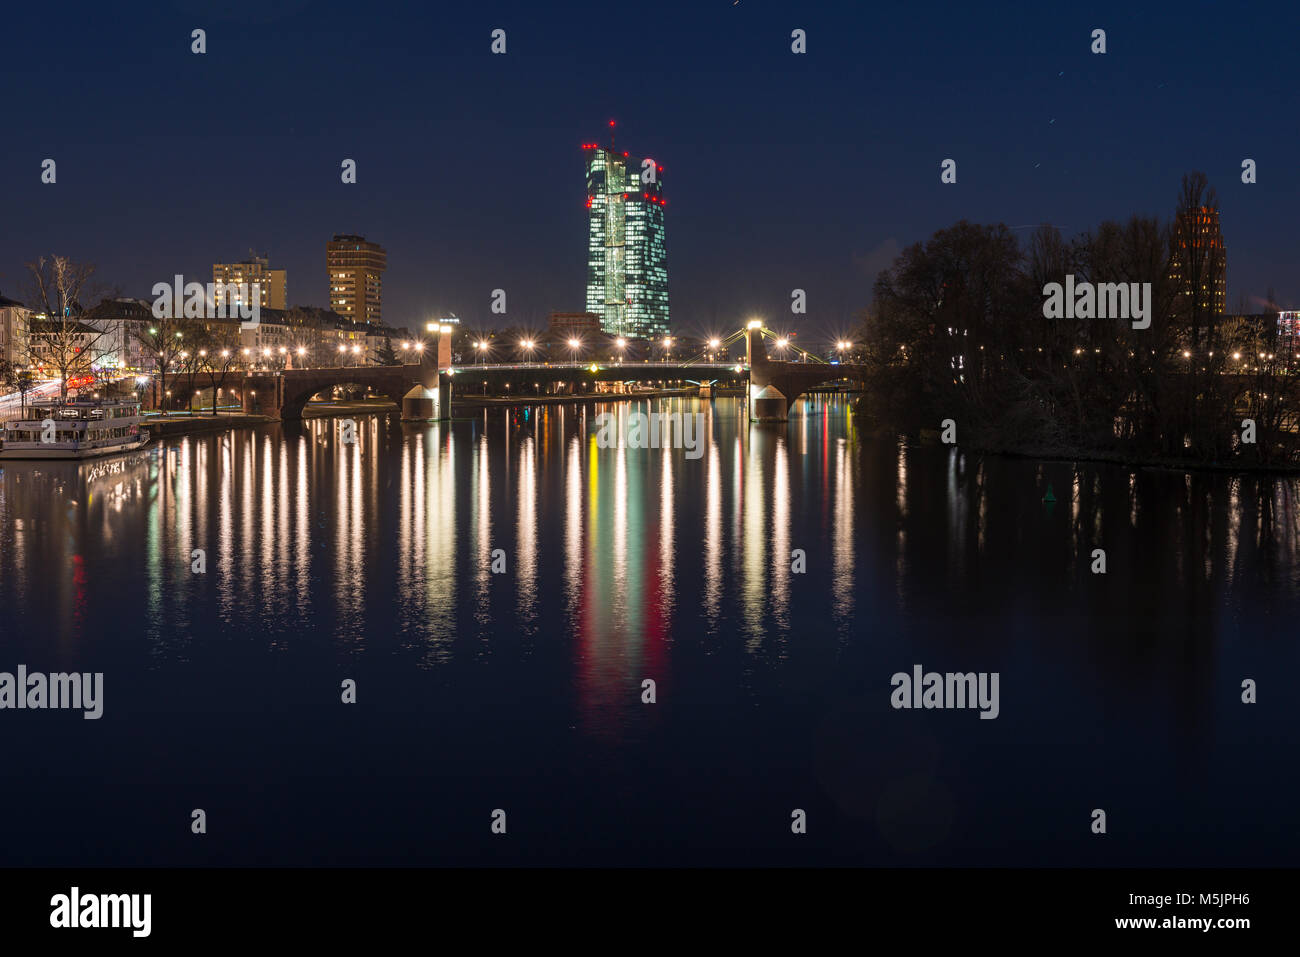 Vue depuis l'Eiserner Steg sur la rivière Main à la Banque centrale européenne illuminée la nuit,BCE, Frankfurt am Main, Hesse Banque D'Images